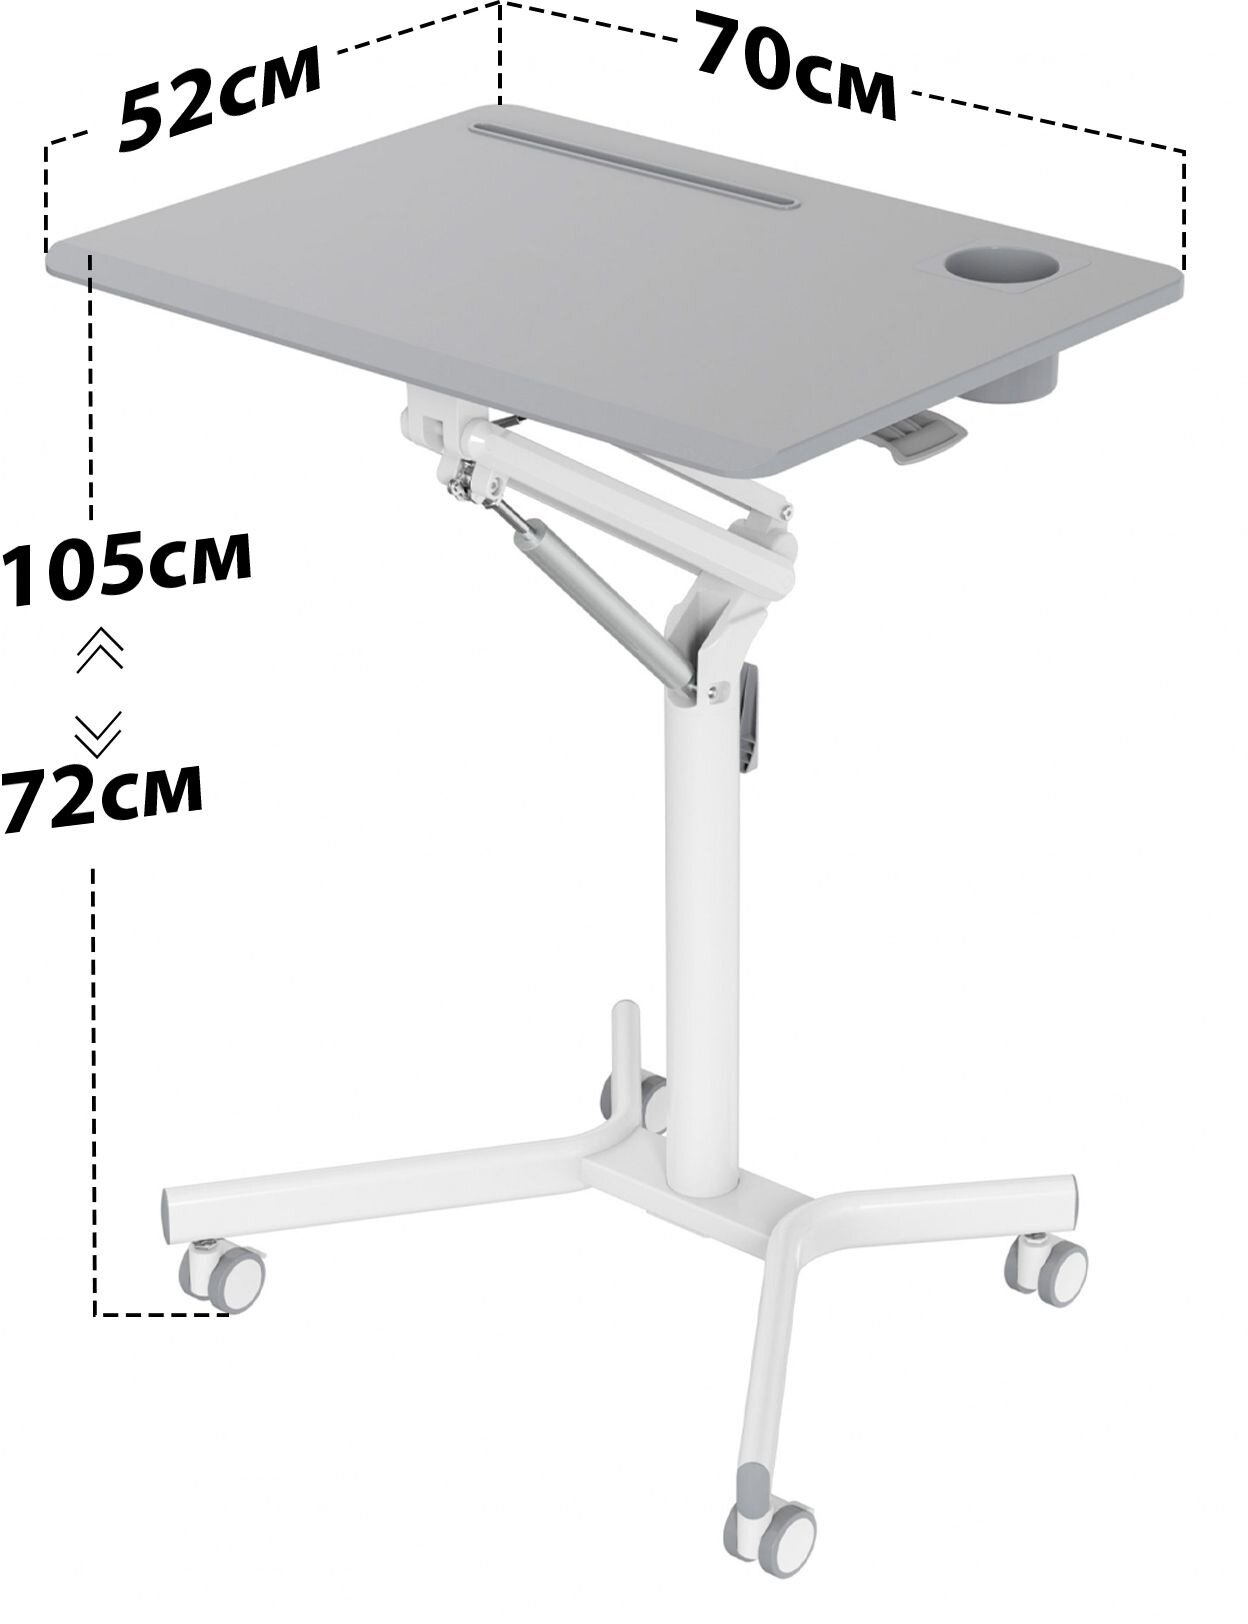 Стол Cactus для ноутбука CS-FDS101WGY столешница МДФ серый 70x52x105см